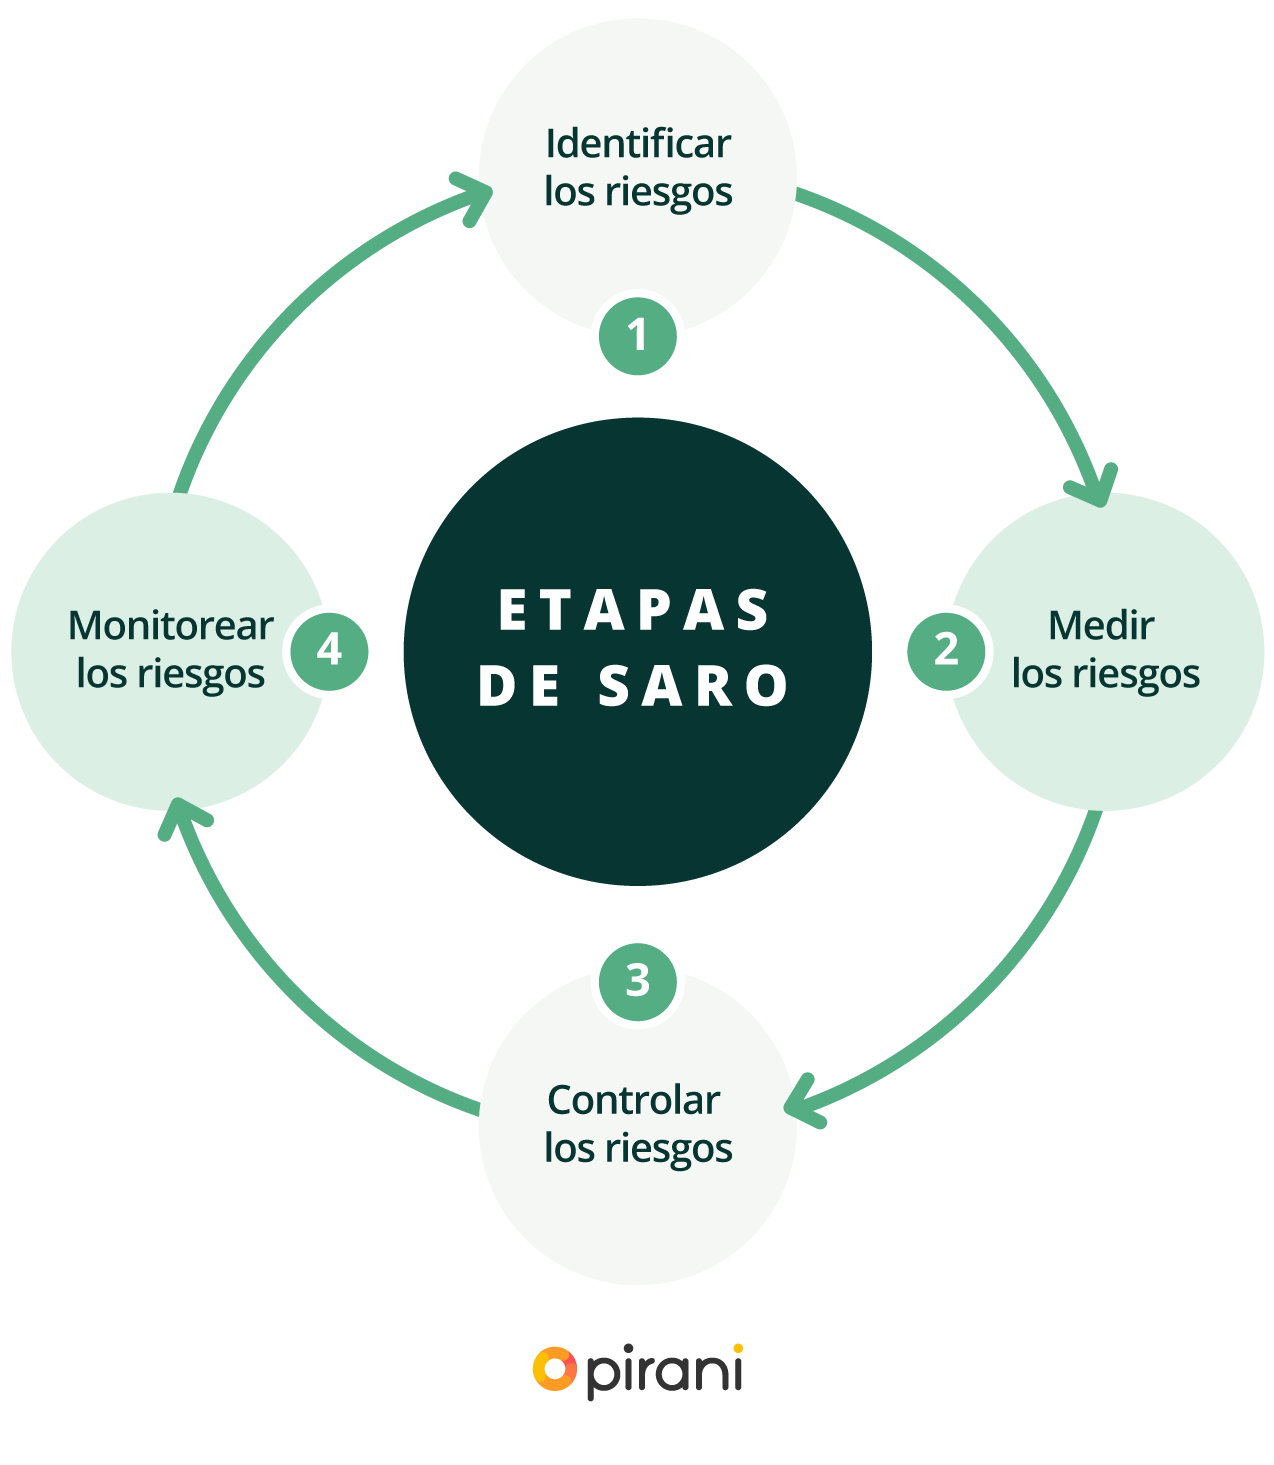 Etapas de SARO  Para la administración del riesgo operacional, la Circular 025 indica que las organizaciones deben realizar las siguientes etapas: